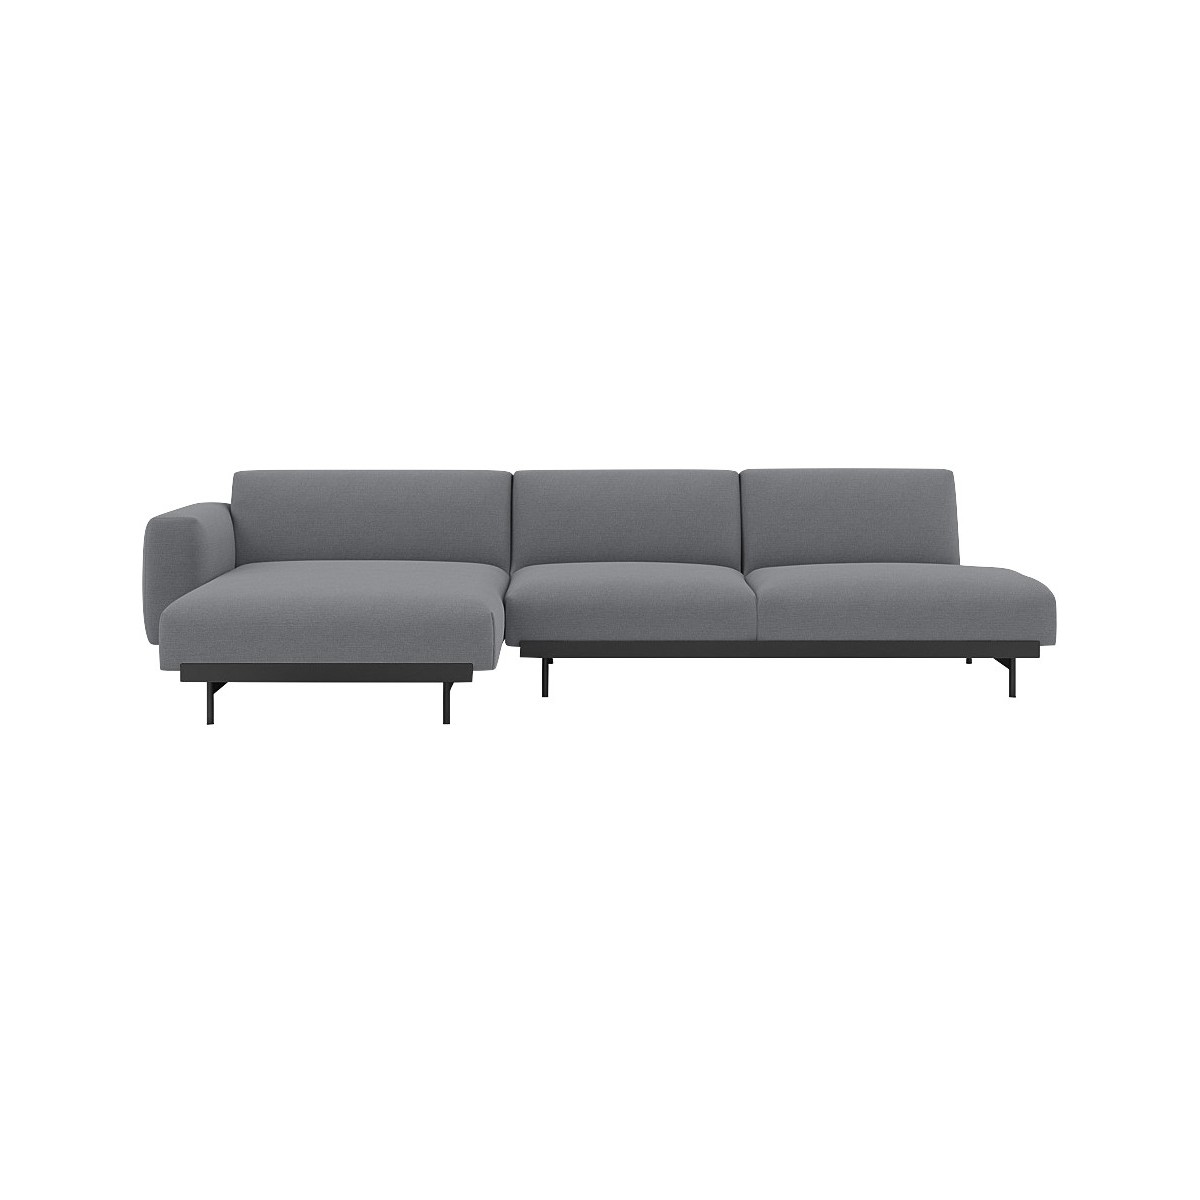 Ocean 80 / black – In Situ 3-seater sofa / configuration 9 – 297 x 169 cm